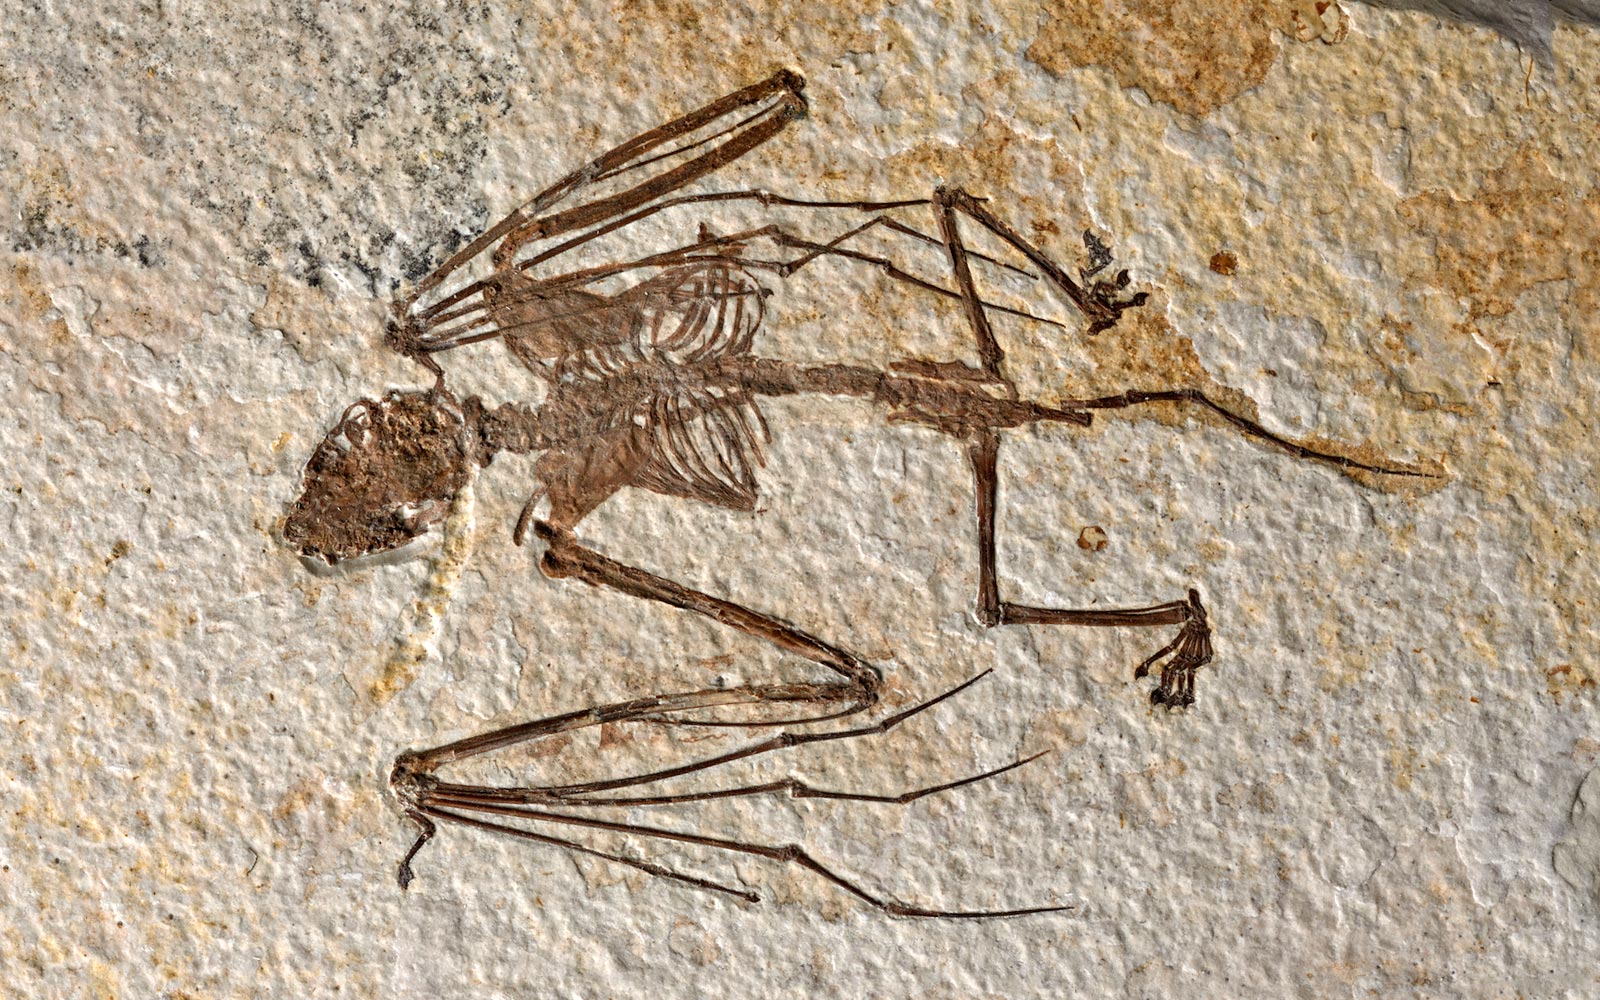 5200만년 된 박쥐 골격은 새로운 종과 비행 포유류의 진화에 대한 단서를 보여줍니다.